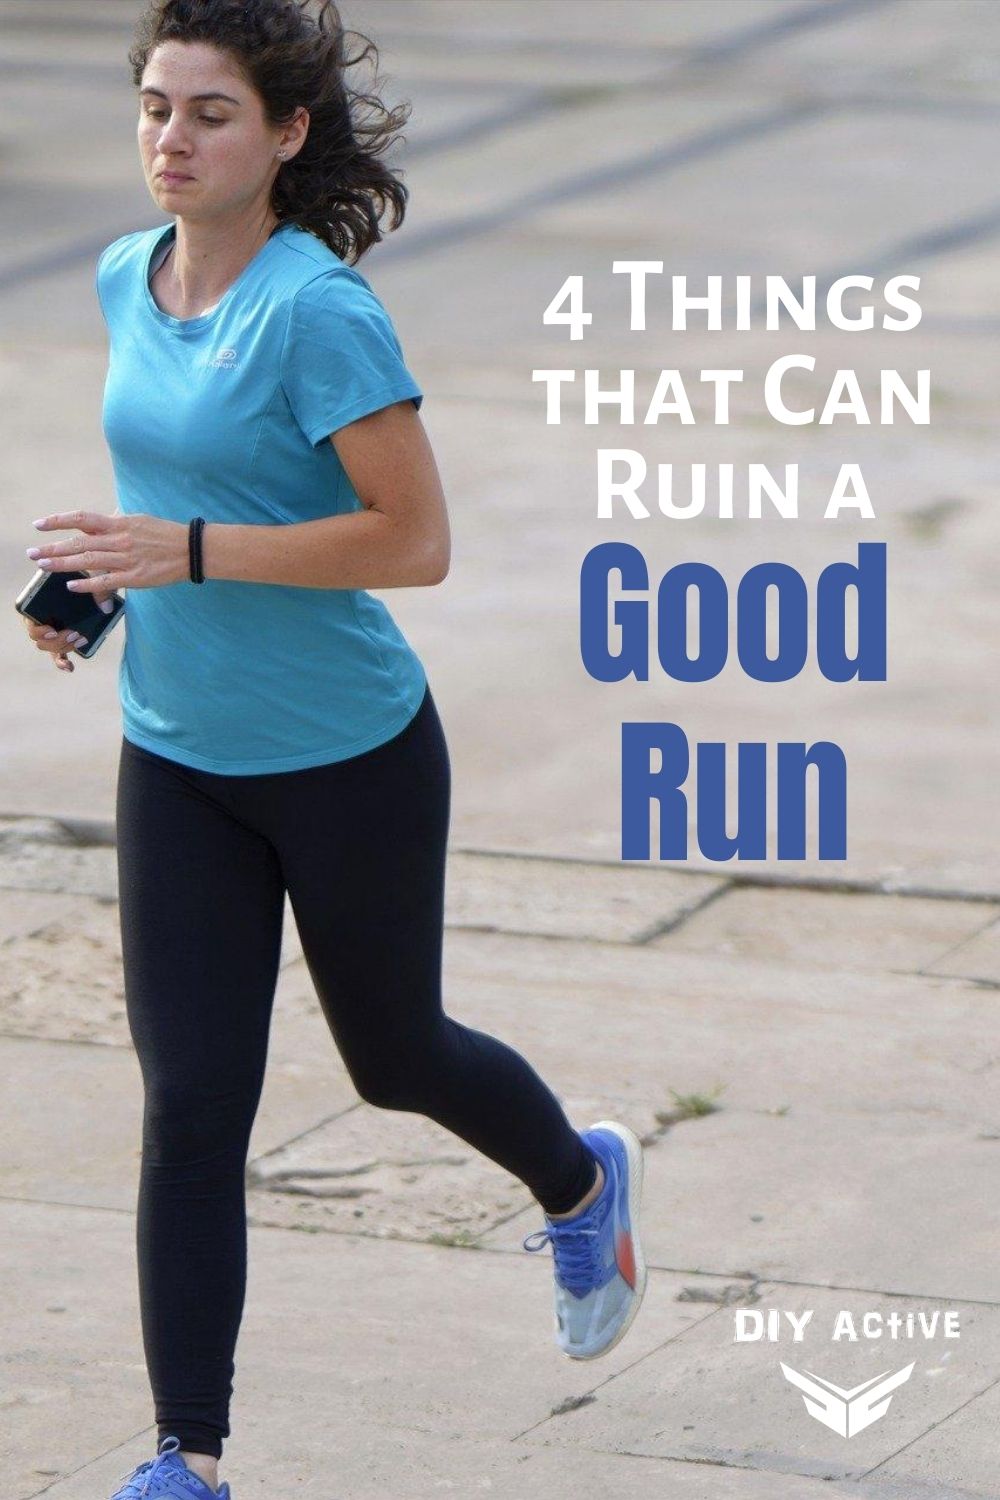 4 Things that Can Ruin a Good Run